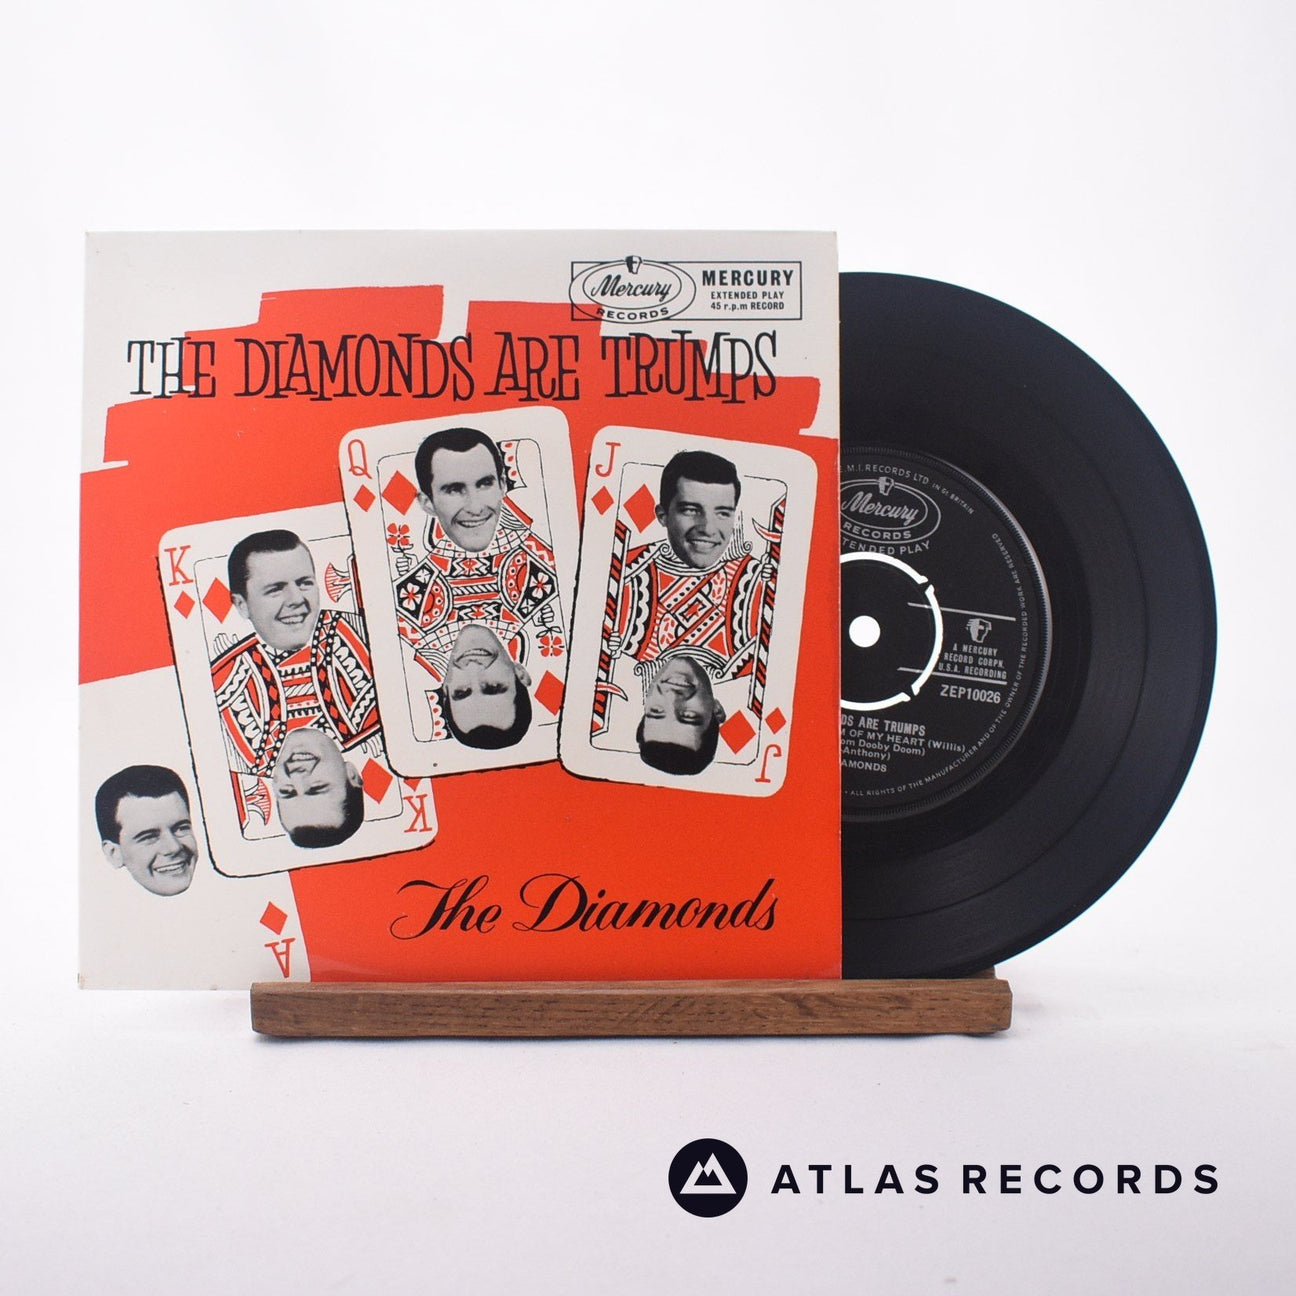 The Diamonds The Diamonds Are Trumps 7" Vinyl Record - Front Cover & Record